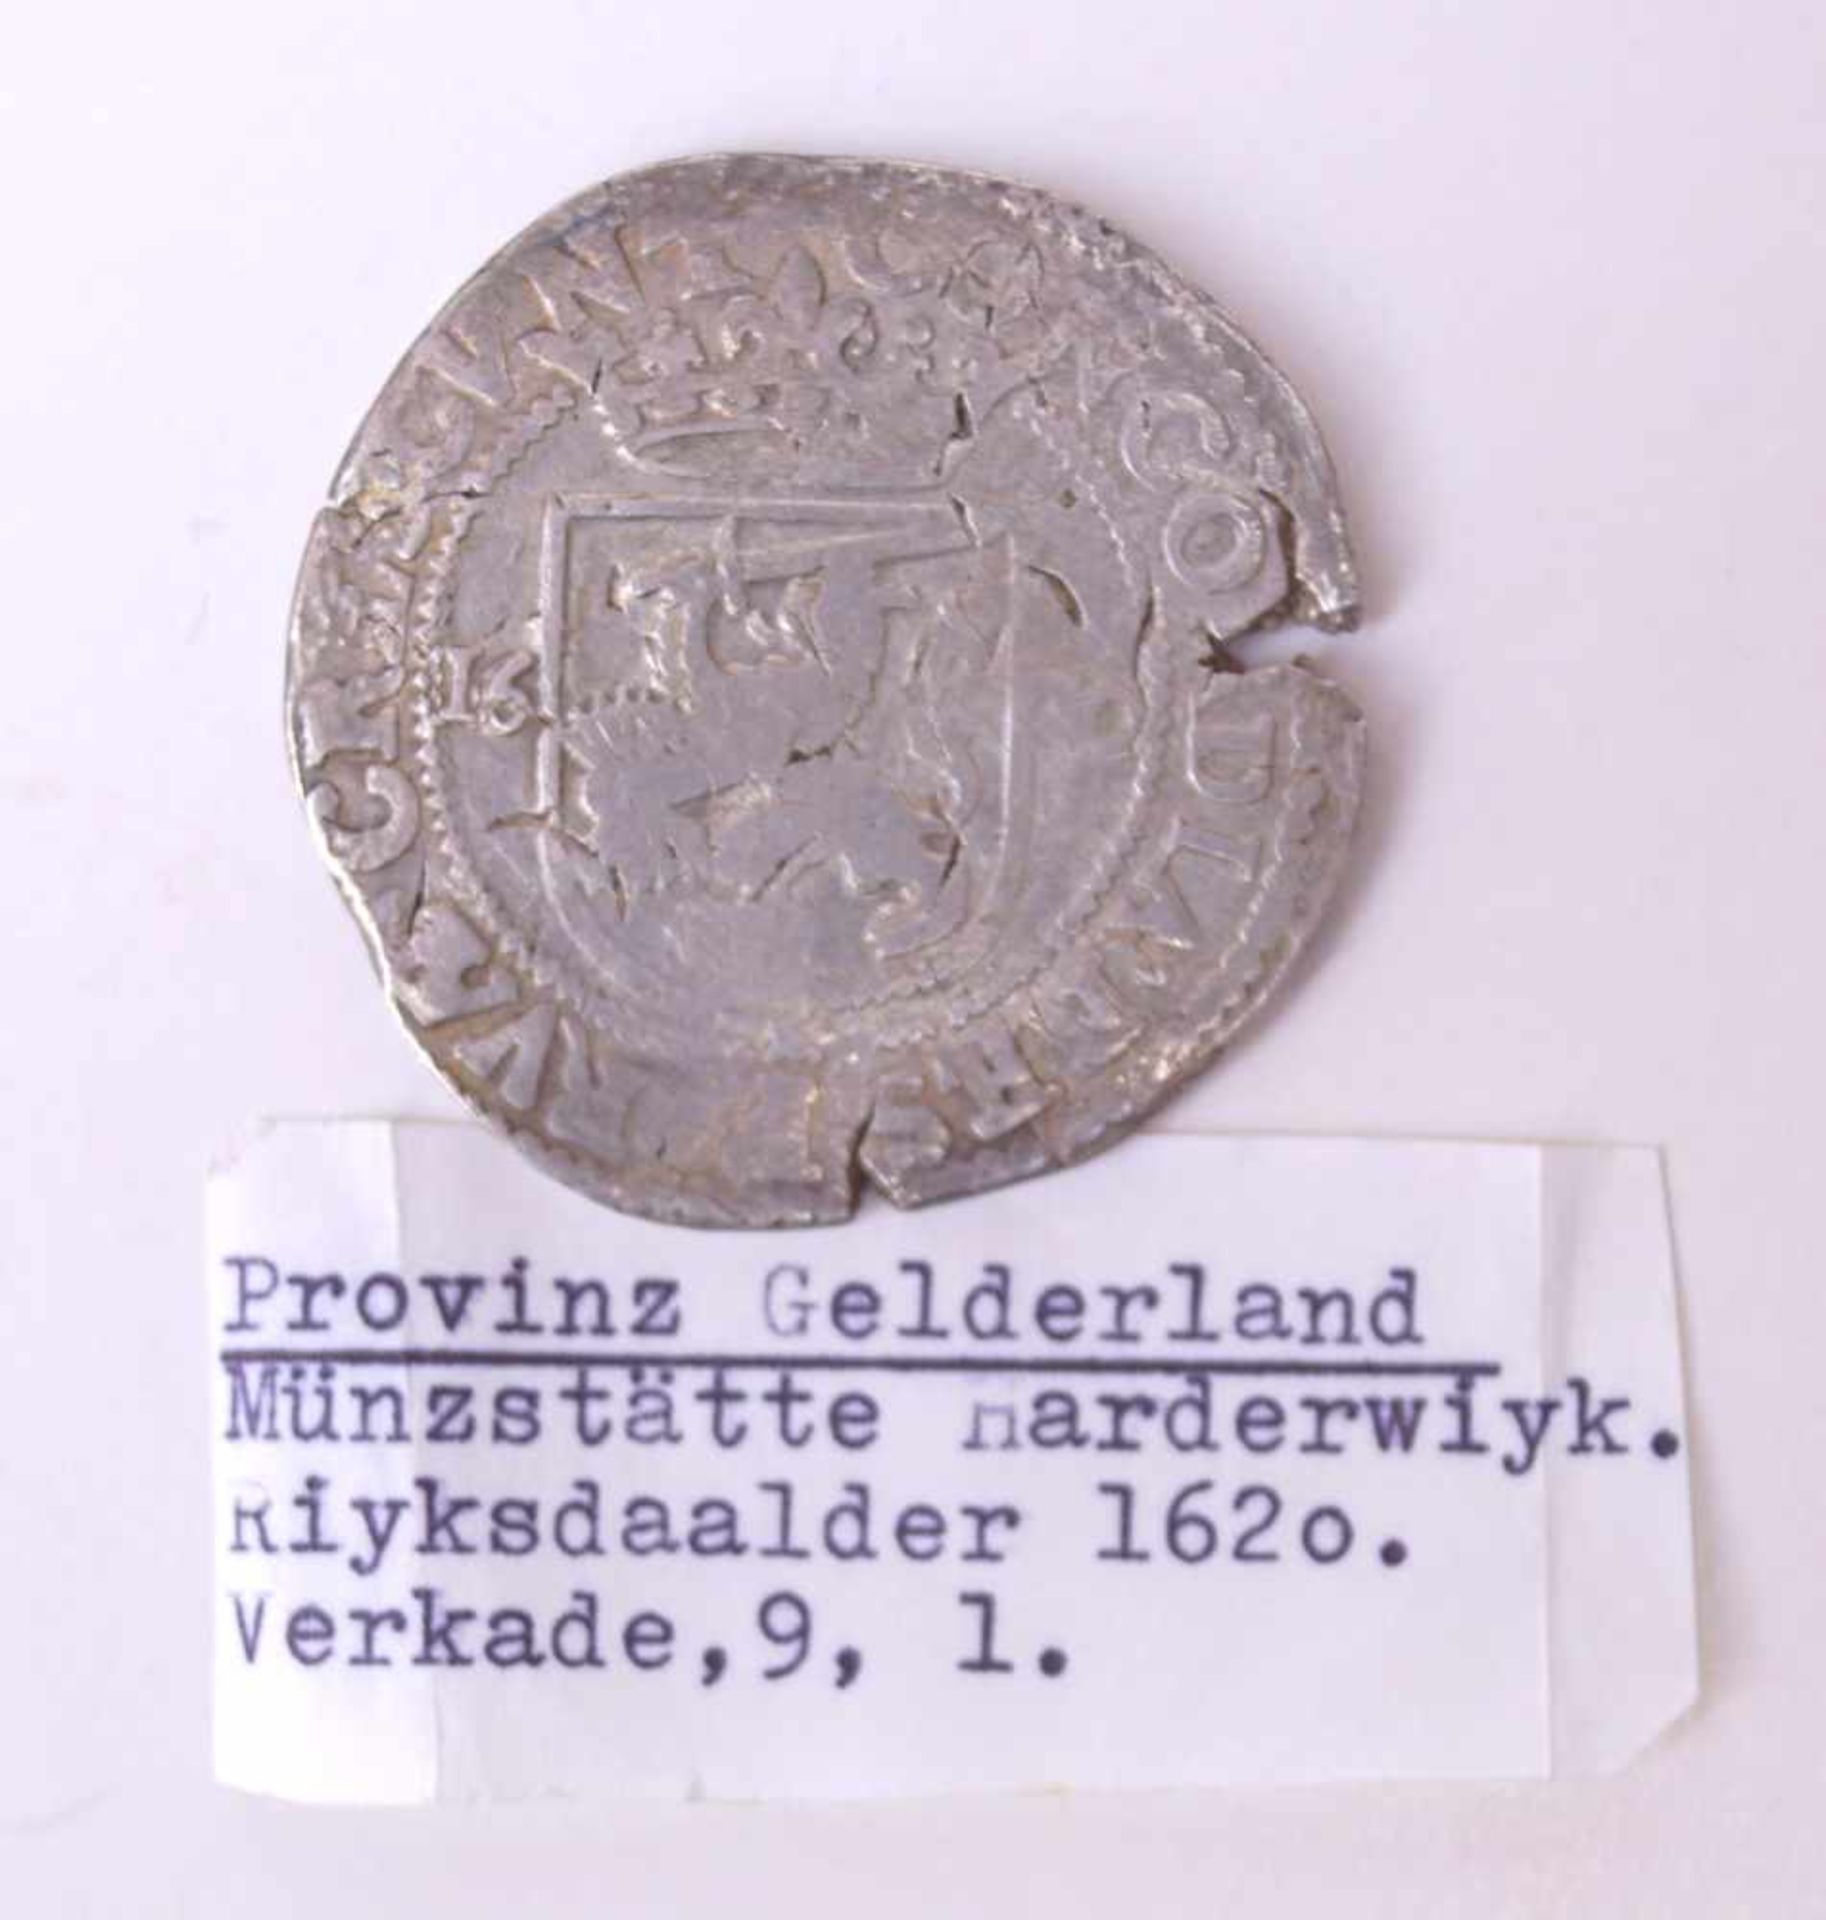 Provinz Gelderland, Riyksdaalder von 1620VS: Bekröntes Wappenschild zwischen Jahreszahl 1620,